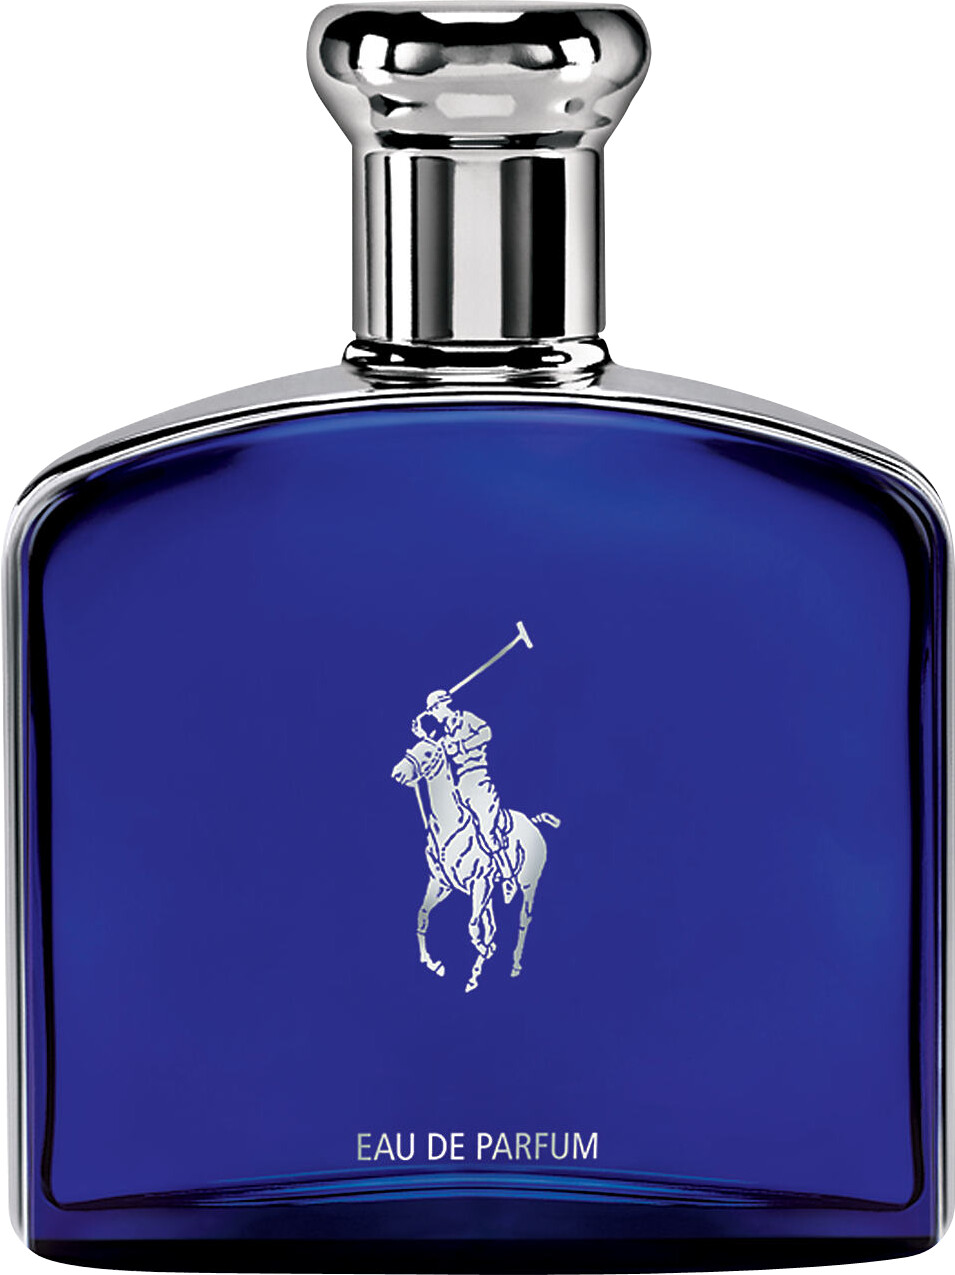 polo blue eau de parfum 125ml